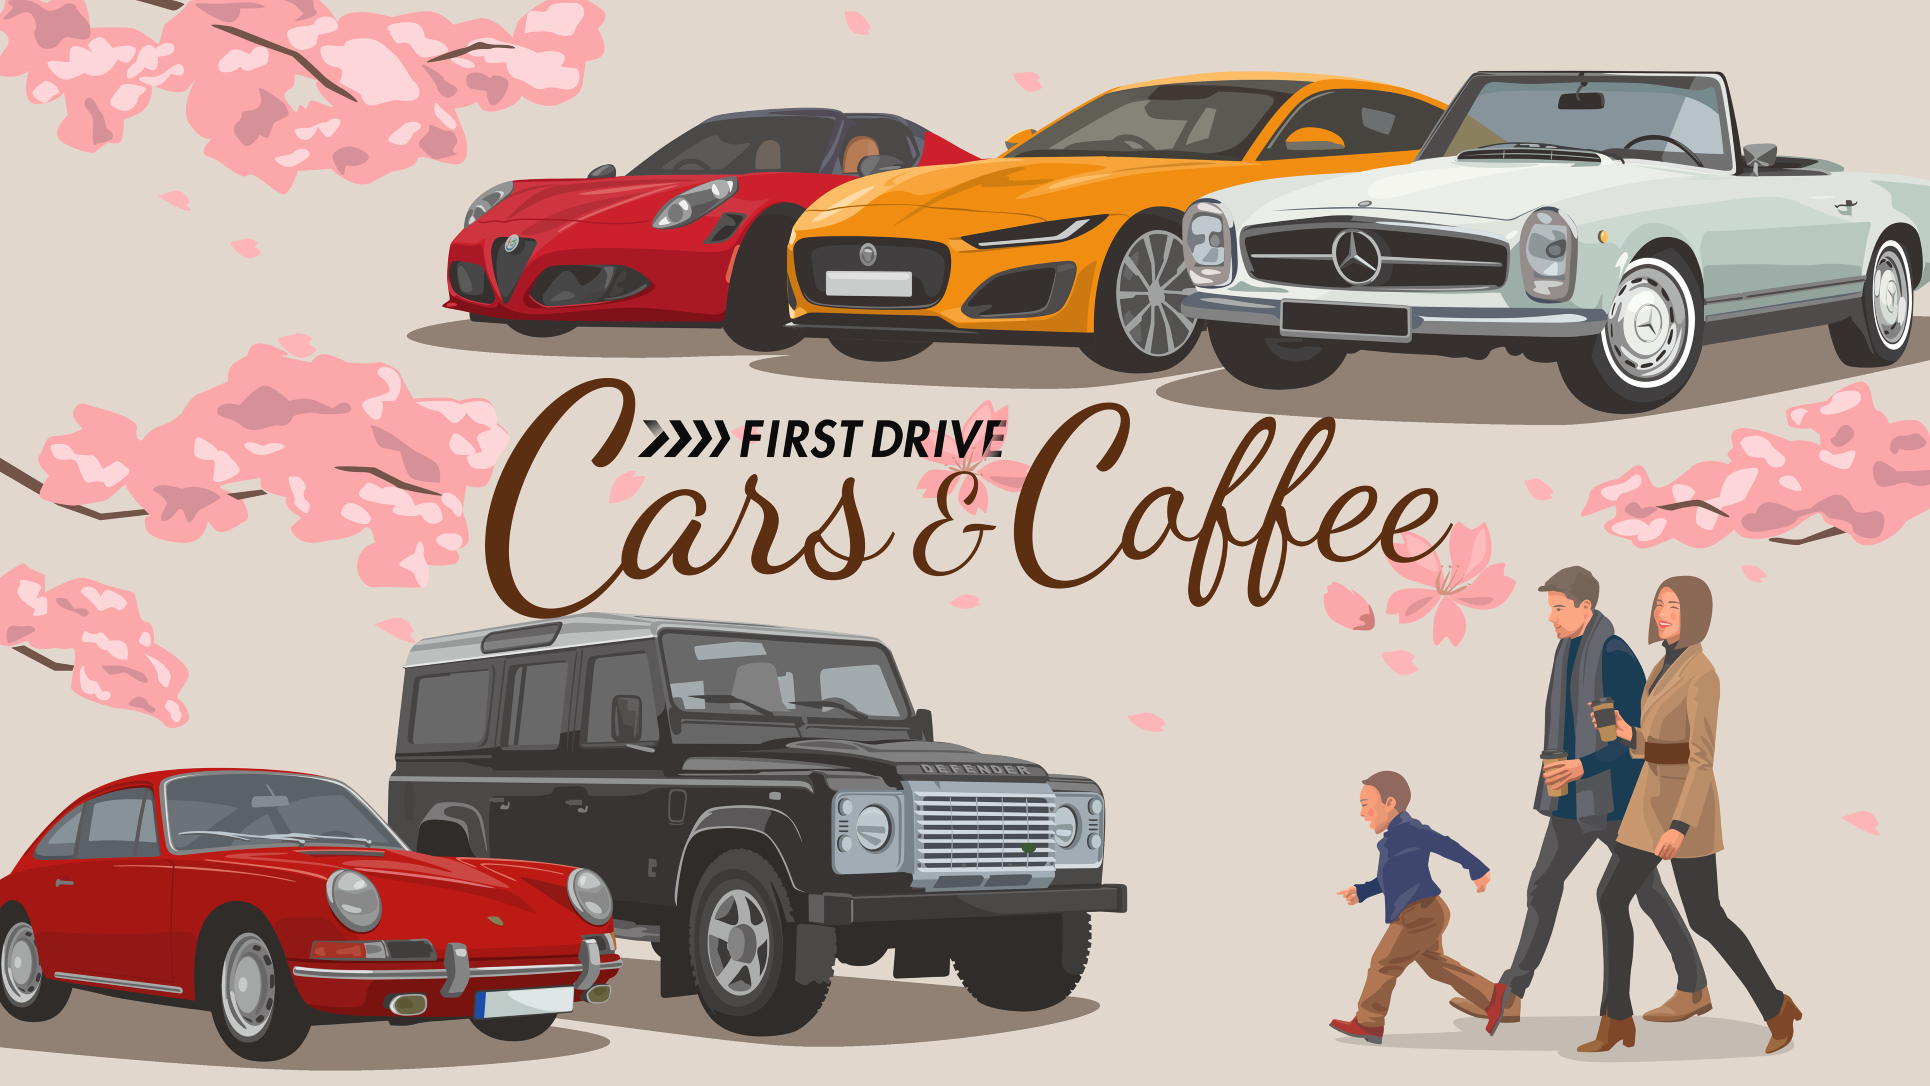 ɓyĐvWFNg@FIRST DRIVECARS & COFFEEJÌ@gTHE WINTER CARS & COFFEEhɓ@F2022N25(y)11:00`14:00